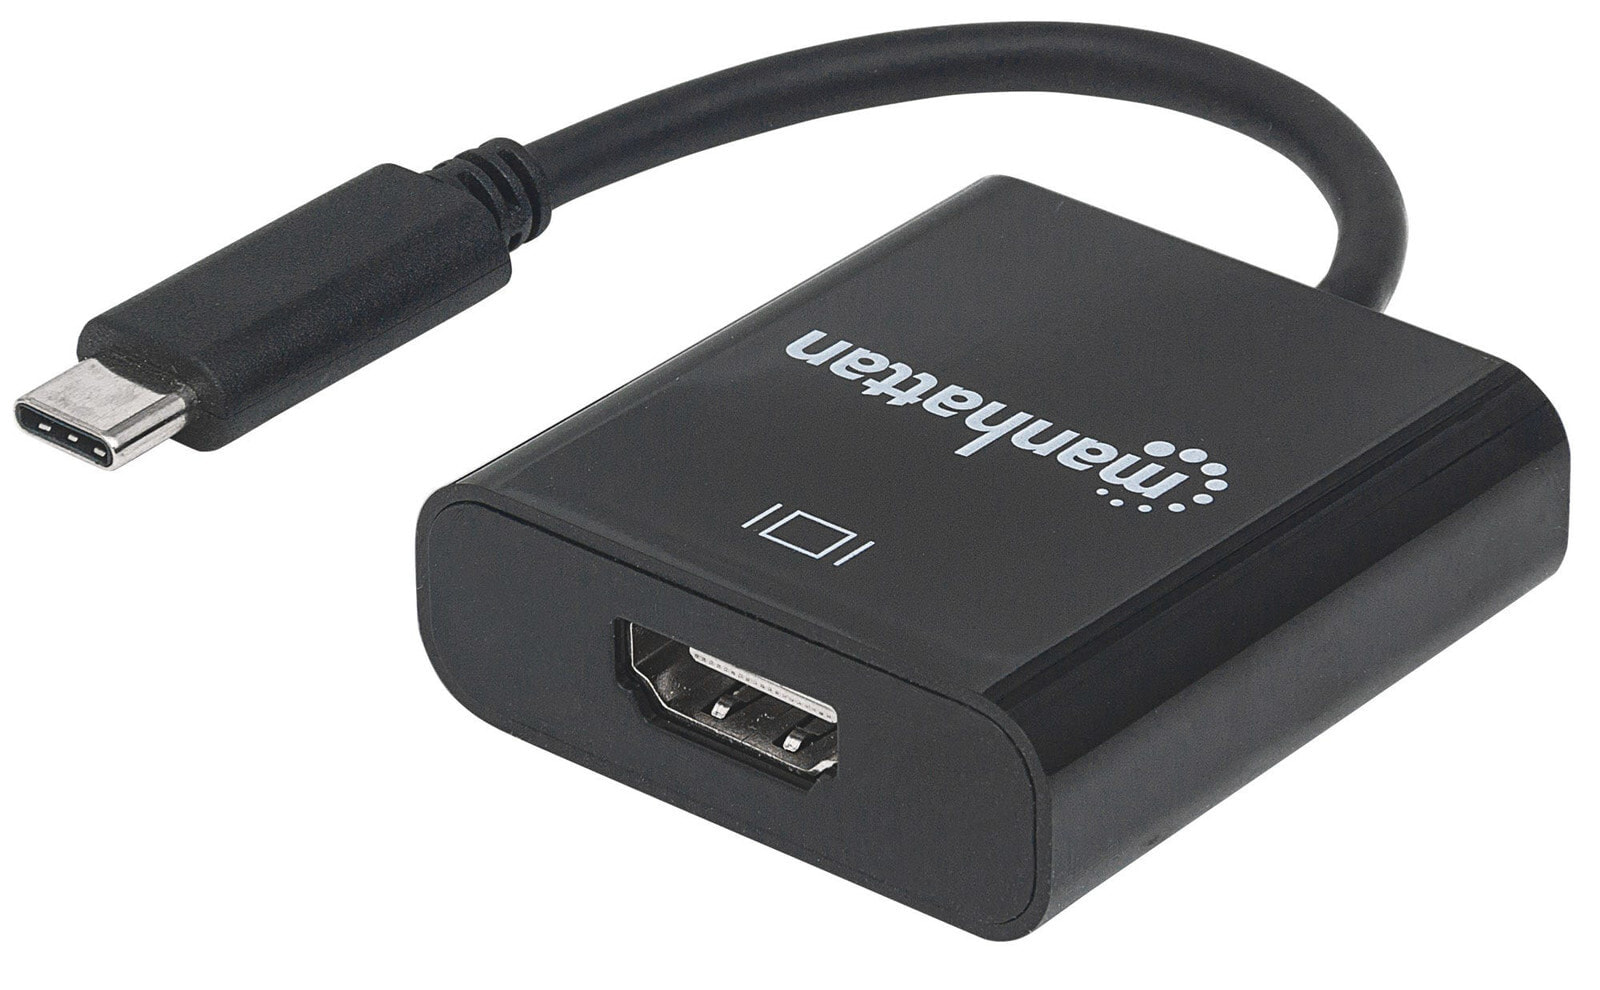 Manhattan 151788 кабельный разъем/переходник USB-C HDMI Черный